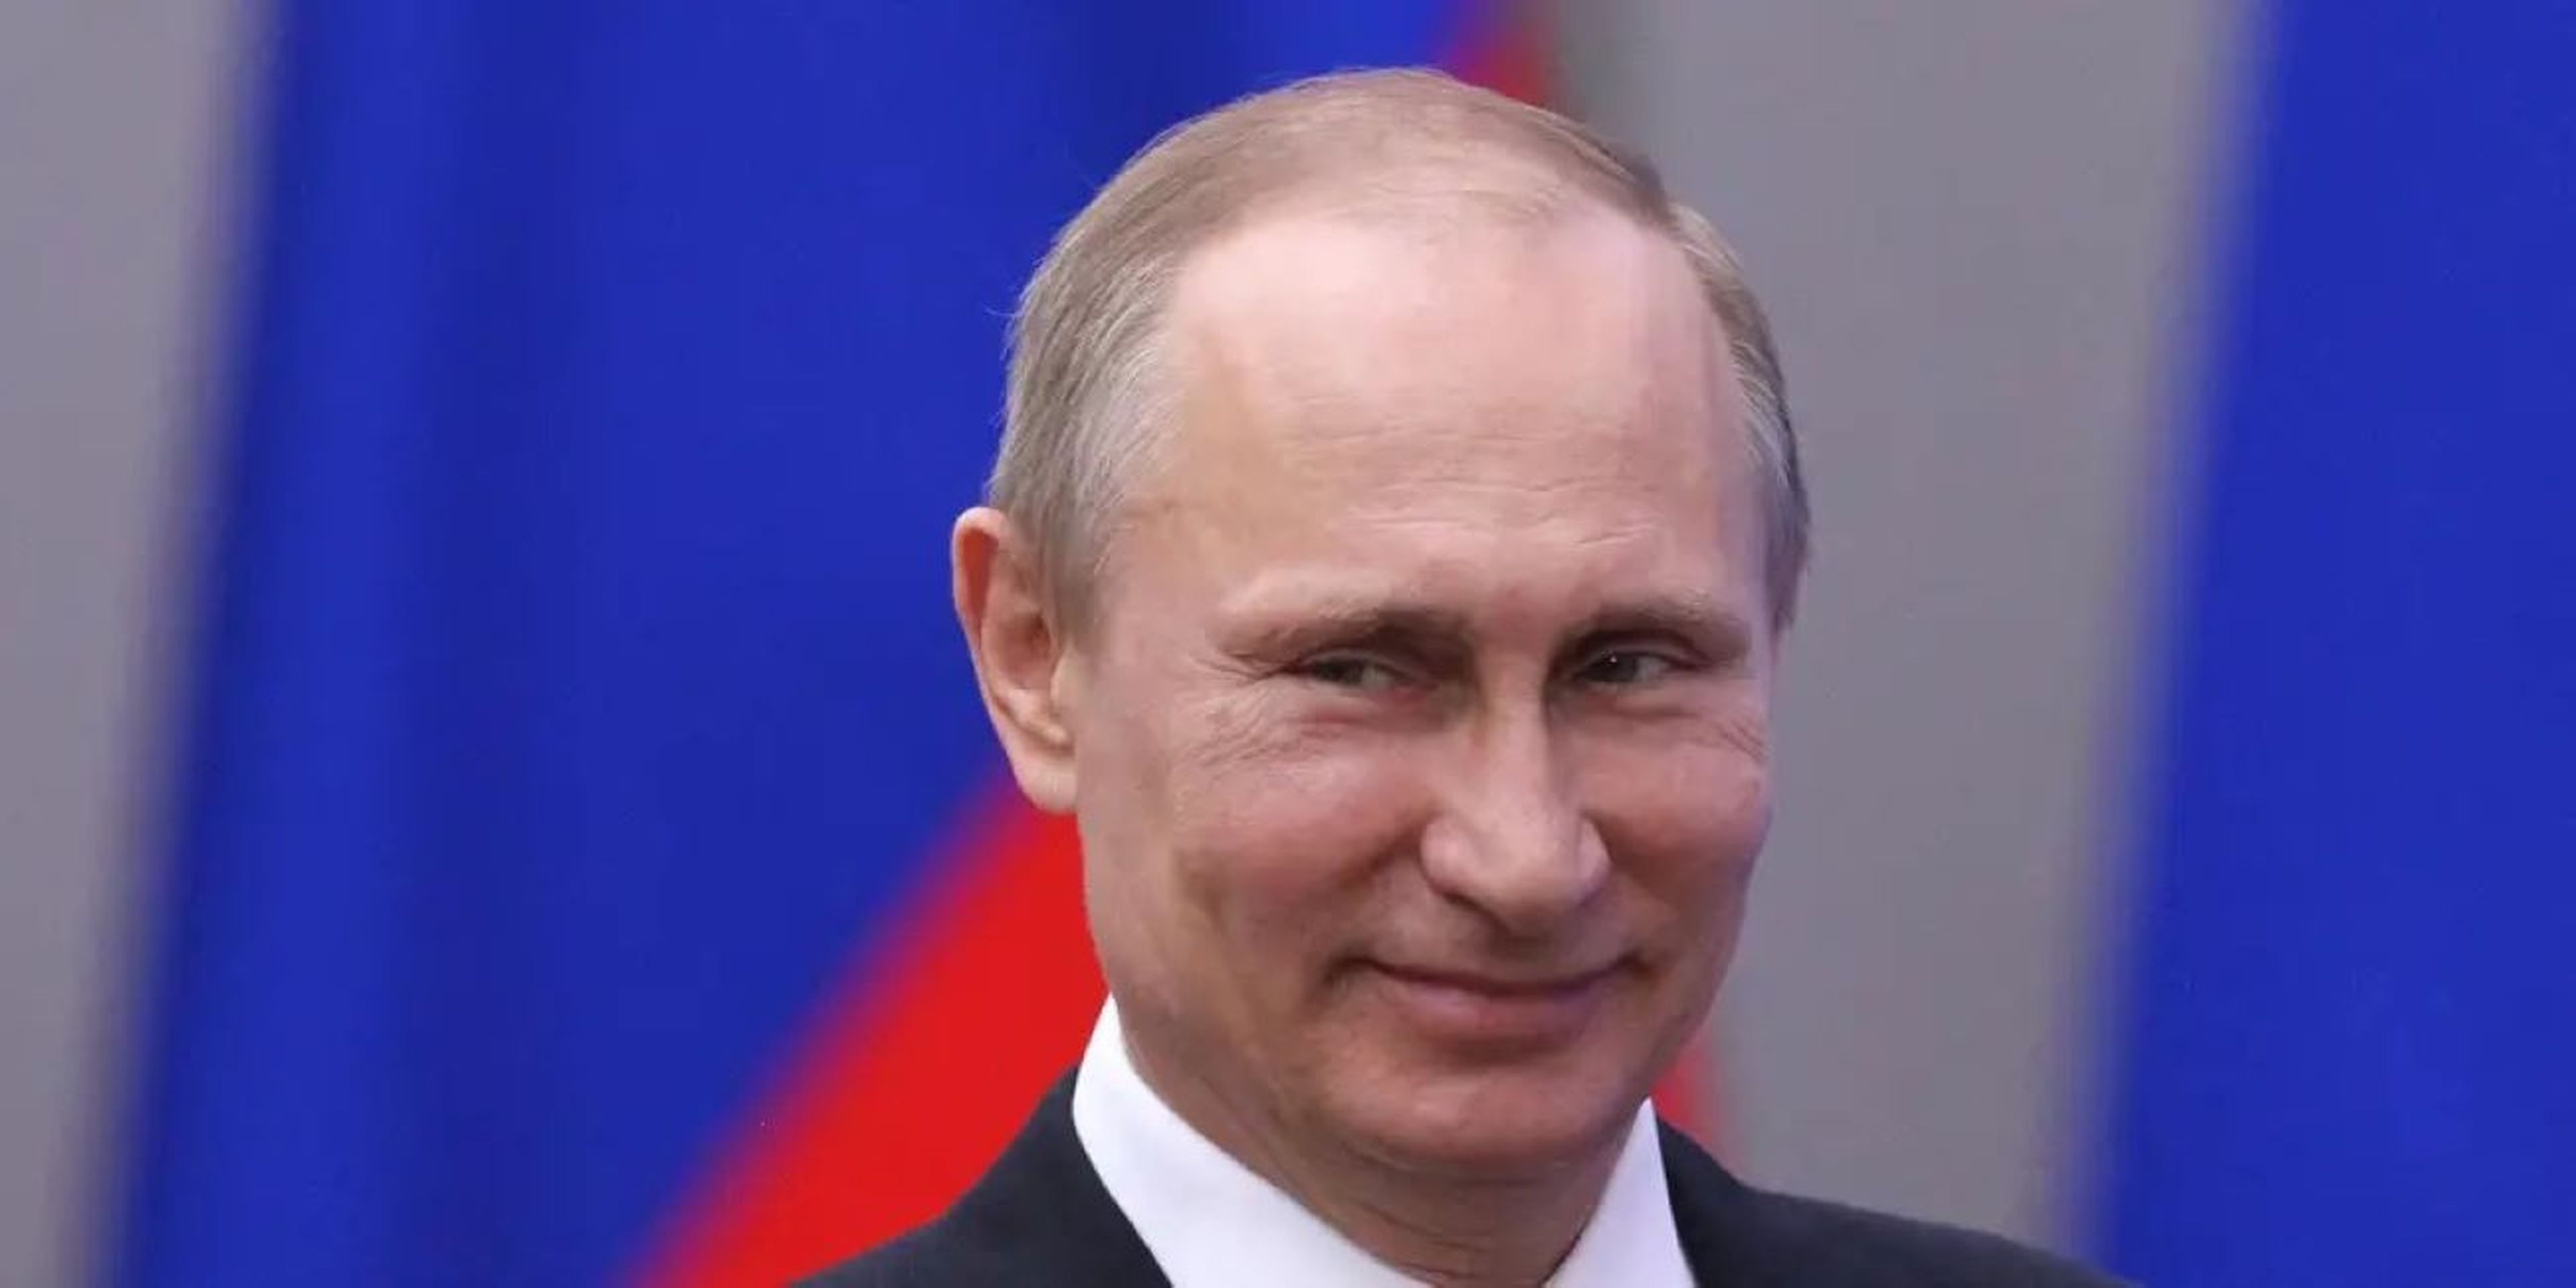 El presidente de Rusia, Vladímir Putin, asiste a la ceremonia de entrega de premios a los miembros del equipo ruso que ganaron medallas en los Juegos Paralímpicos de Invierno el 17 de marzo de 2014 en Sochi, Rusia.